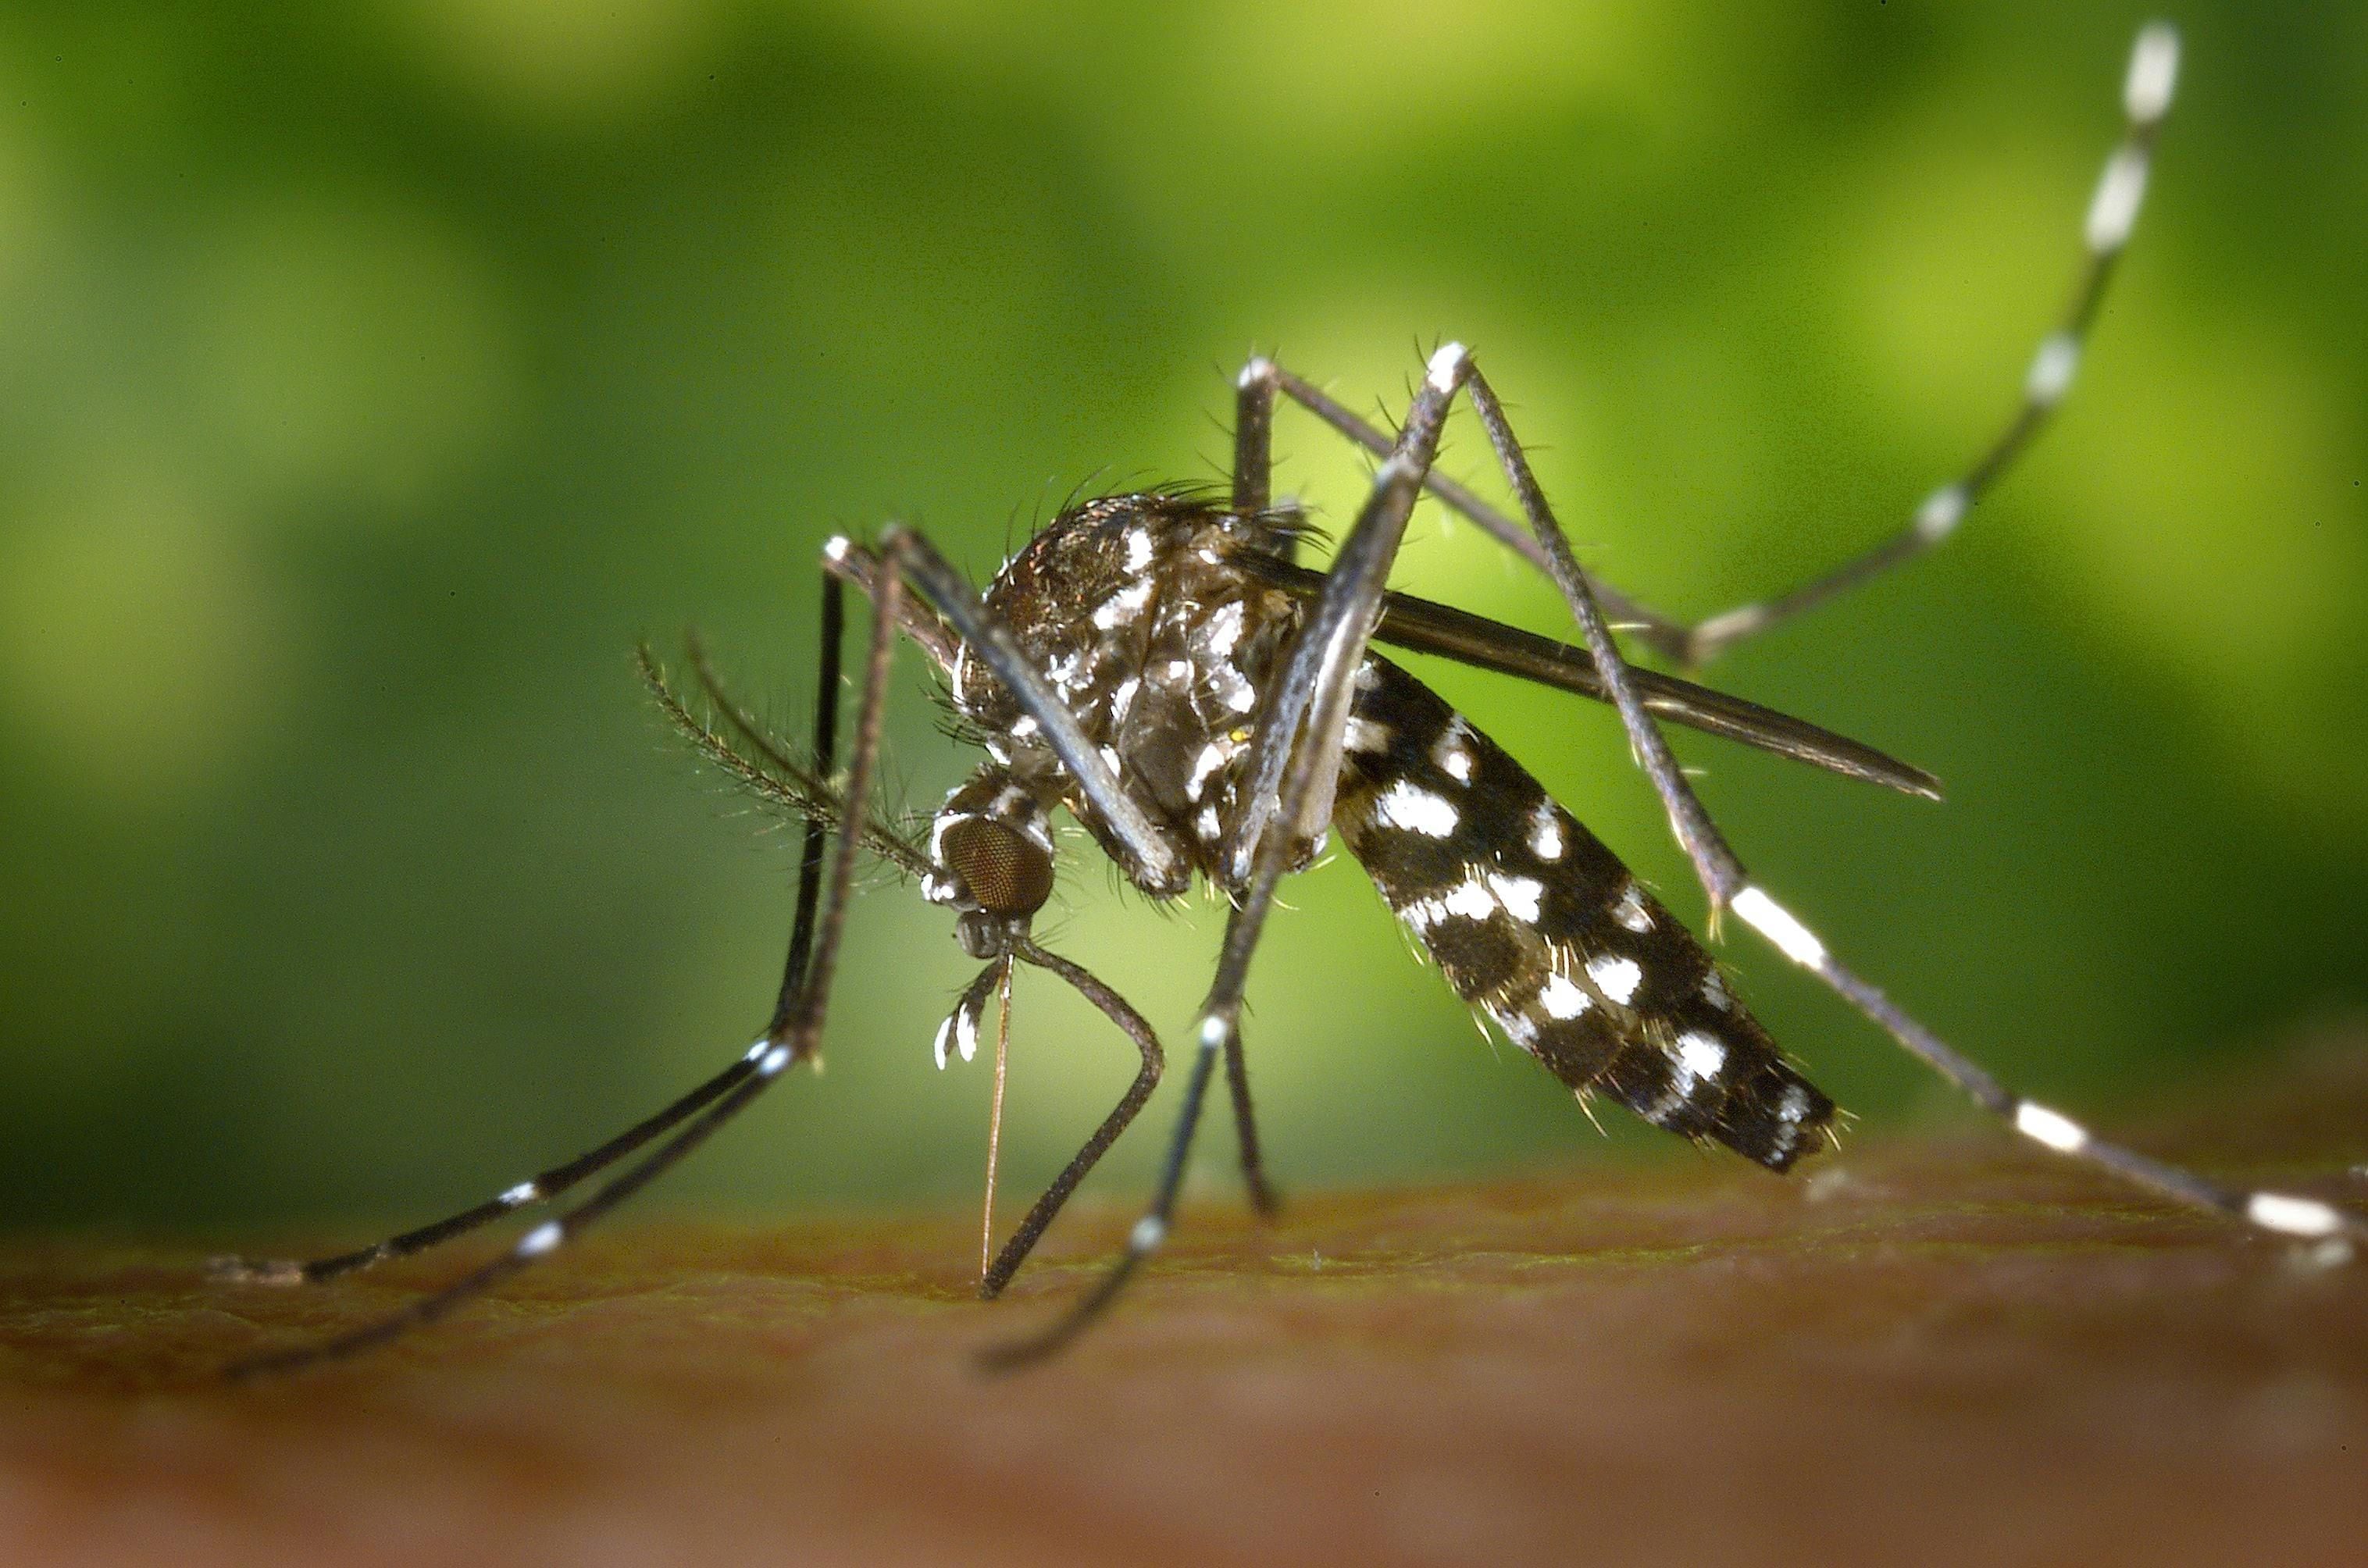 Ante el aumento de casos de dengue debido al clima propenso para el desarrollo del mosquito transmisor, es que se recomienda tener precaución y evitar la reproducción desde nuestros hogares